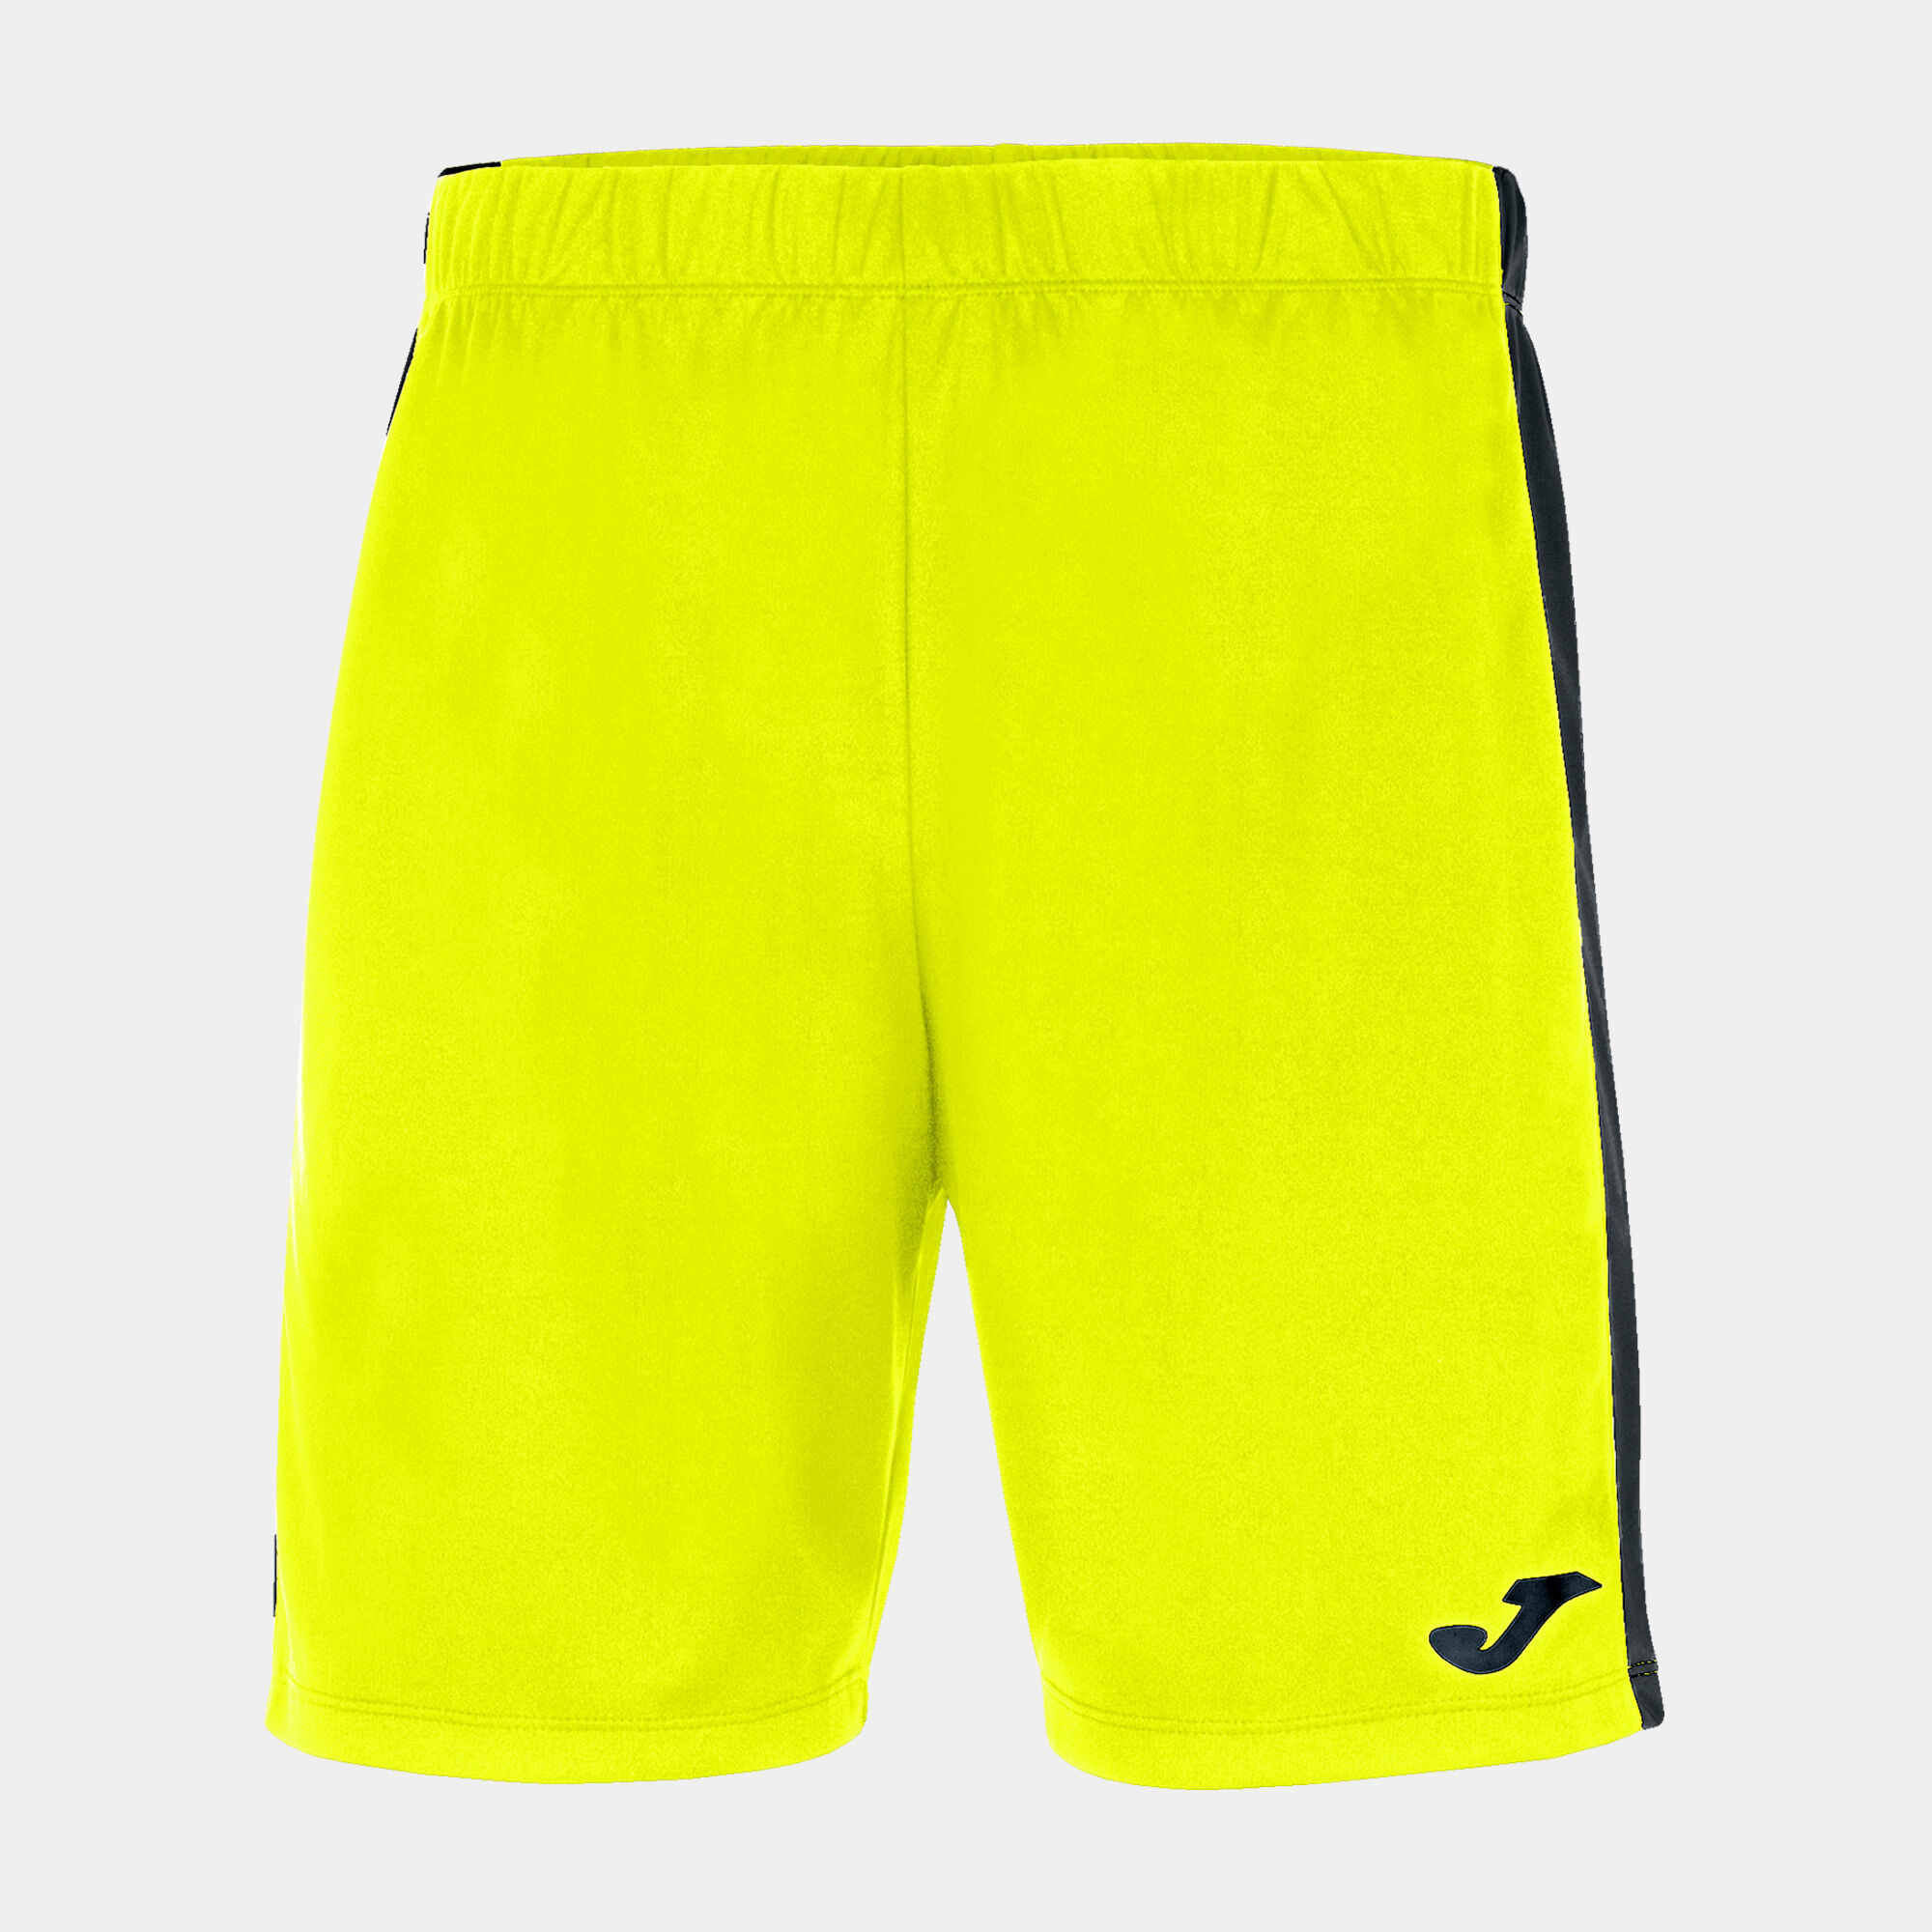 Pantaloncini uomo Maxi giallo fluorescente nero